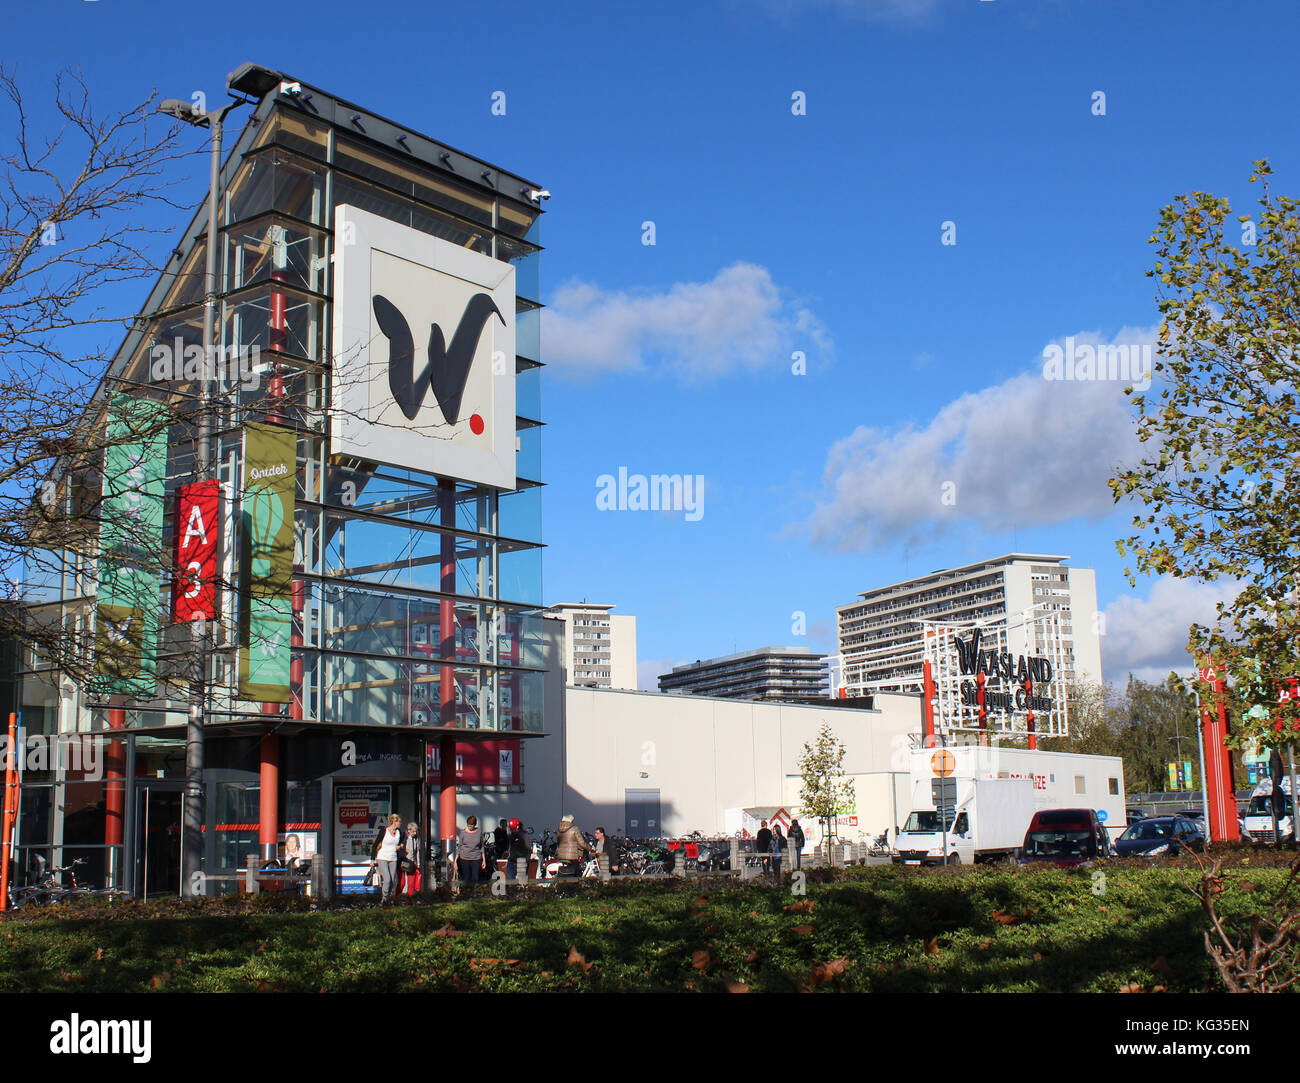 Sint-niklaas, Belgio, 27 ottobre 2017: il retail "waasland shopping centre' con 140 negozi è uno dei più grandi centri shopping in Belgio. Foto Stock